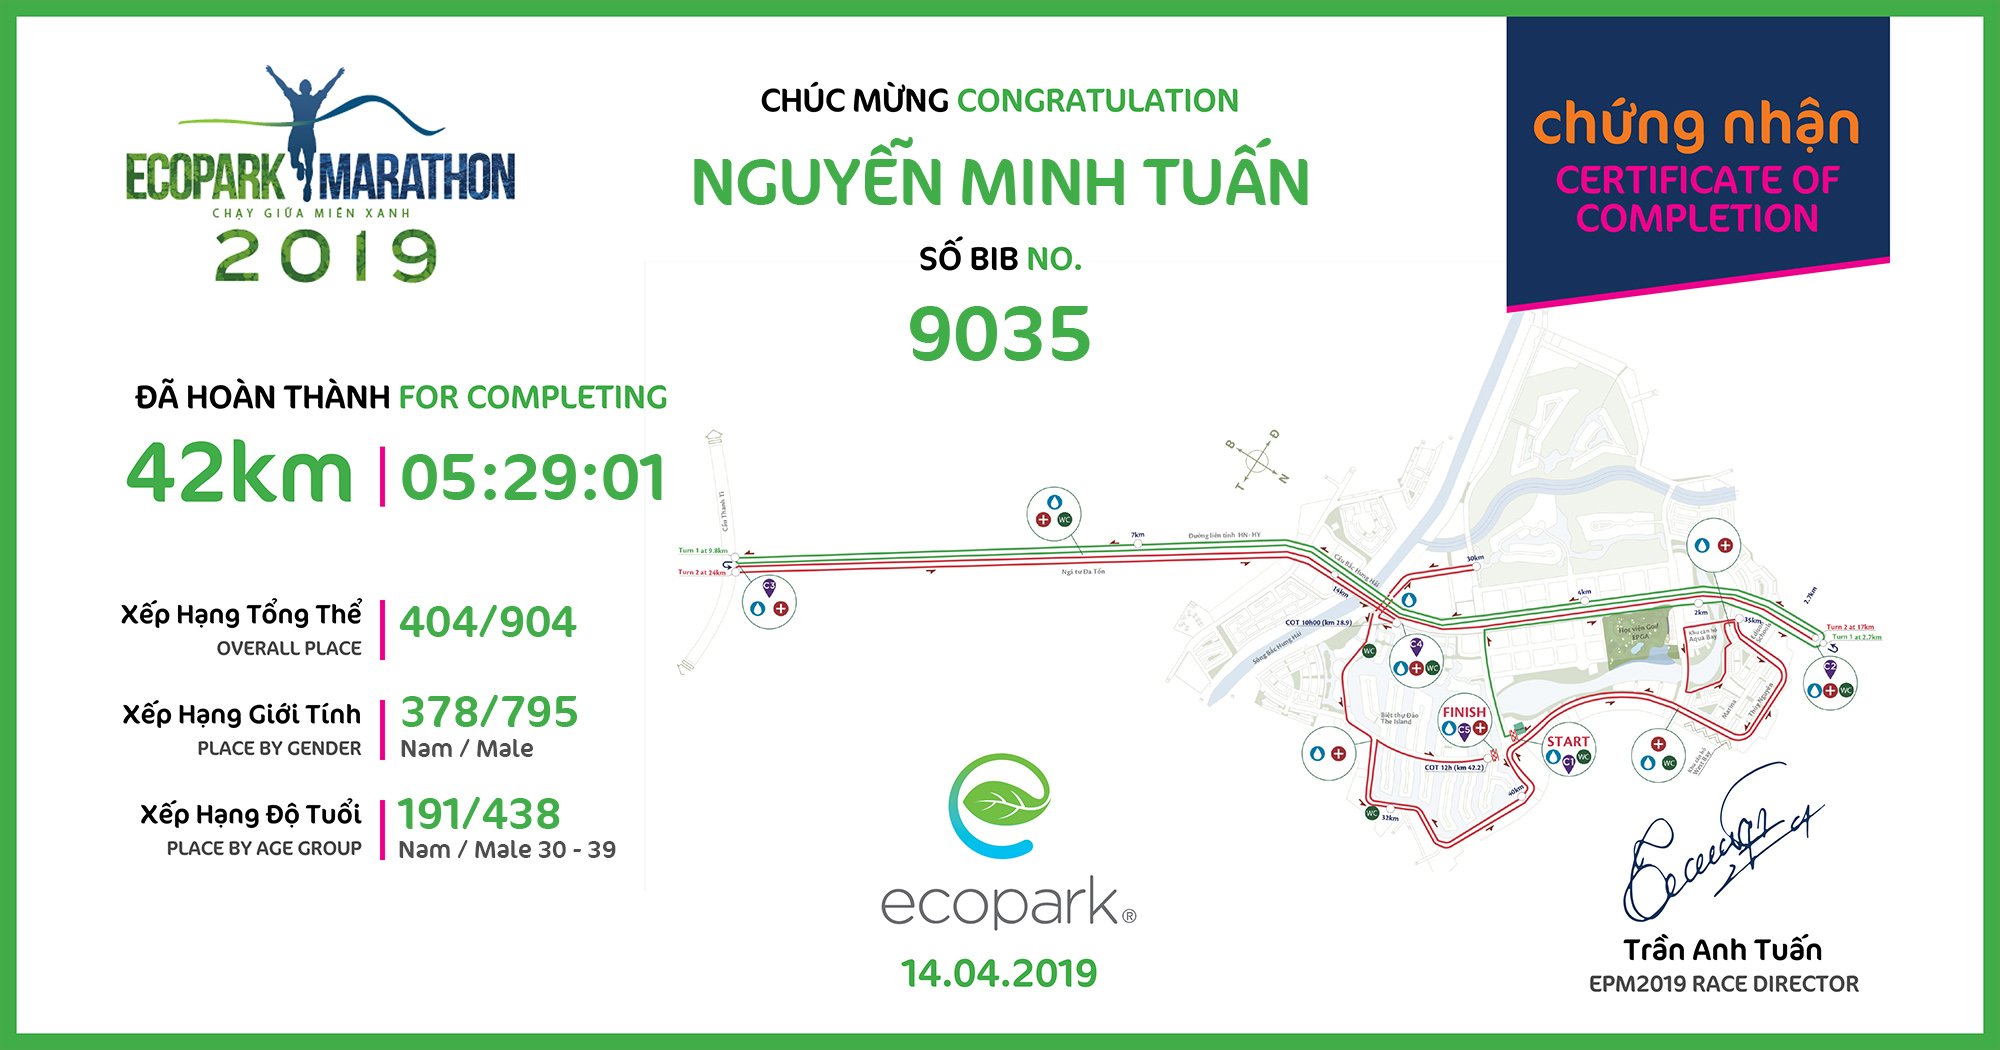 9035 - Nguyễn Minh Tuấn